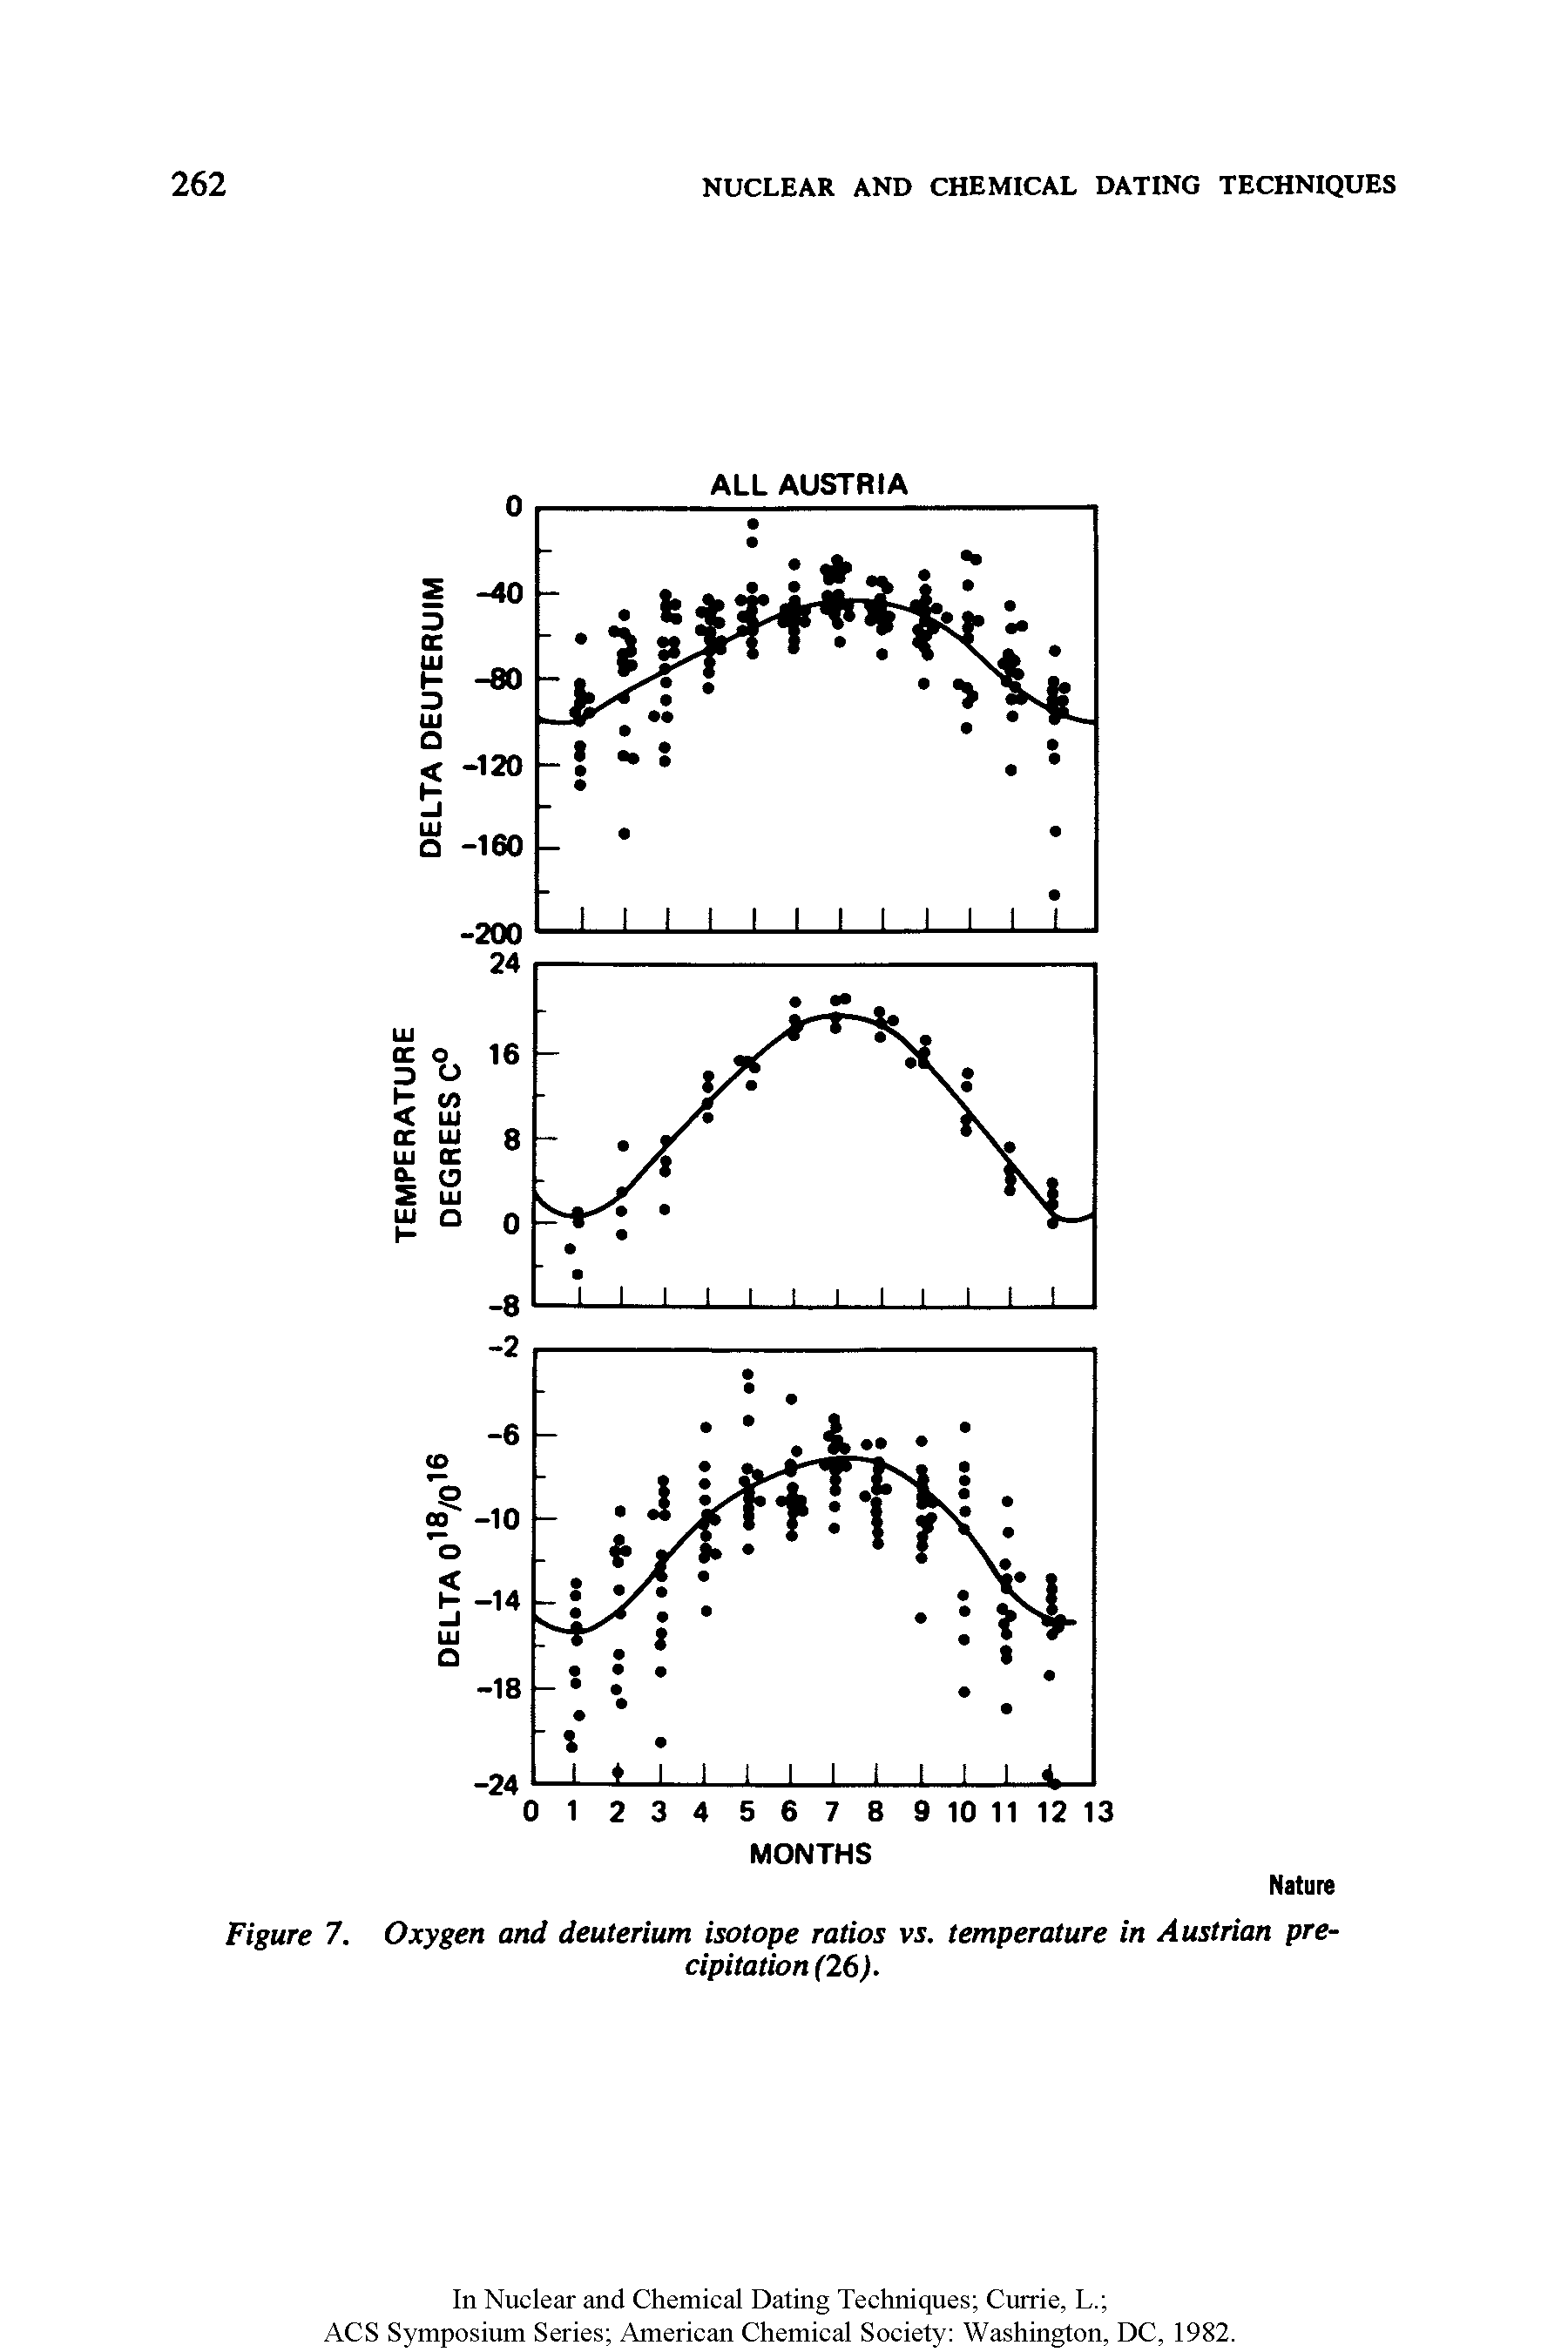 Figure 7. Oxygen and deuterium isotope ratios vs. temperature in Austrian precipitation (26).